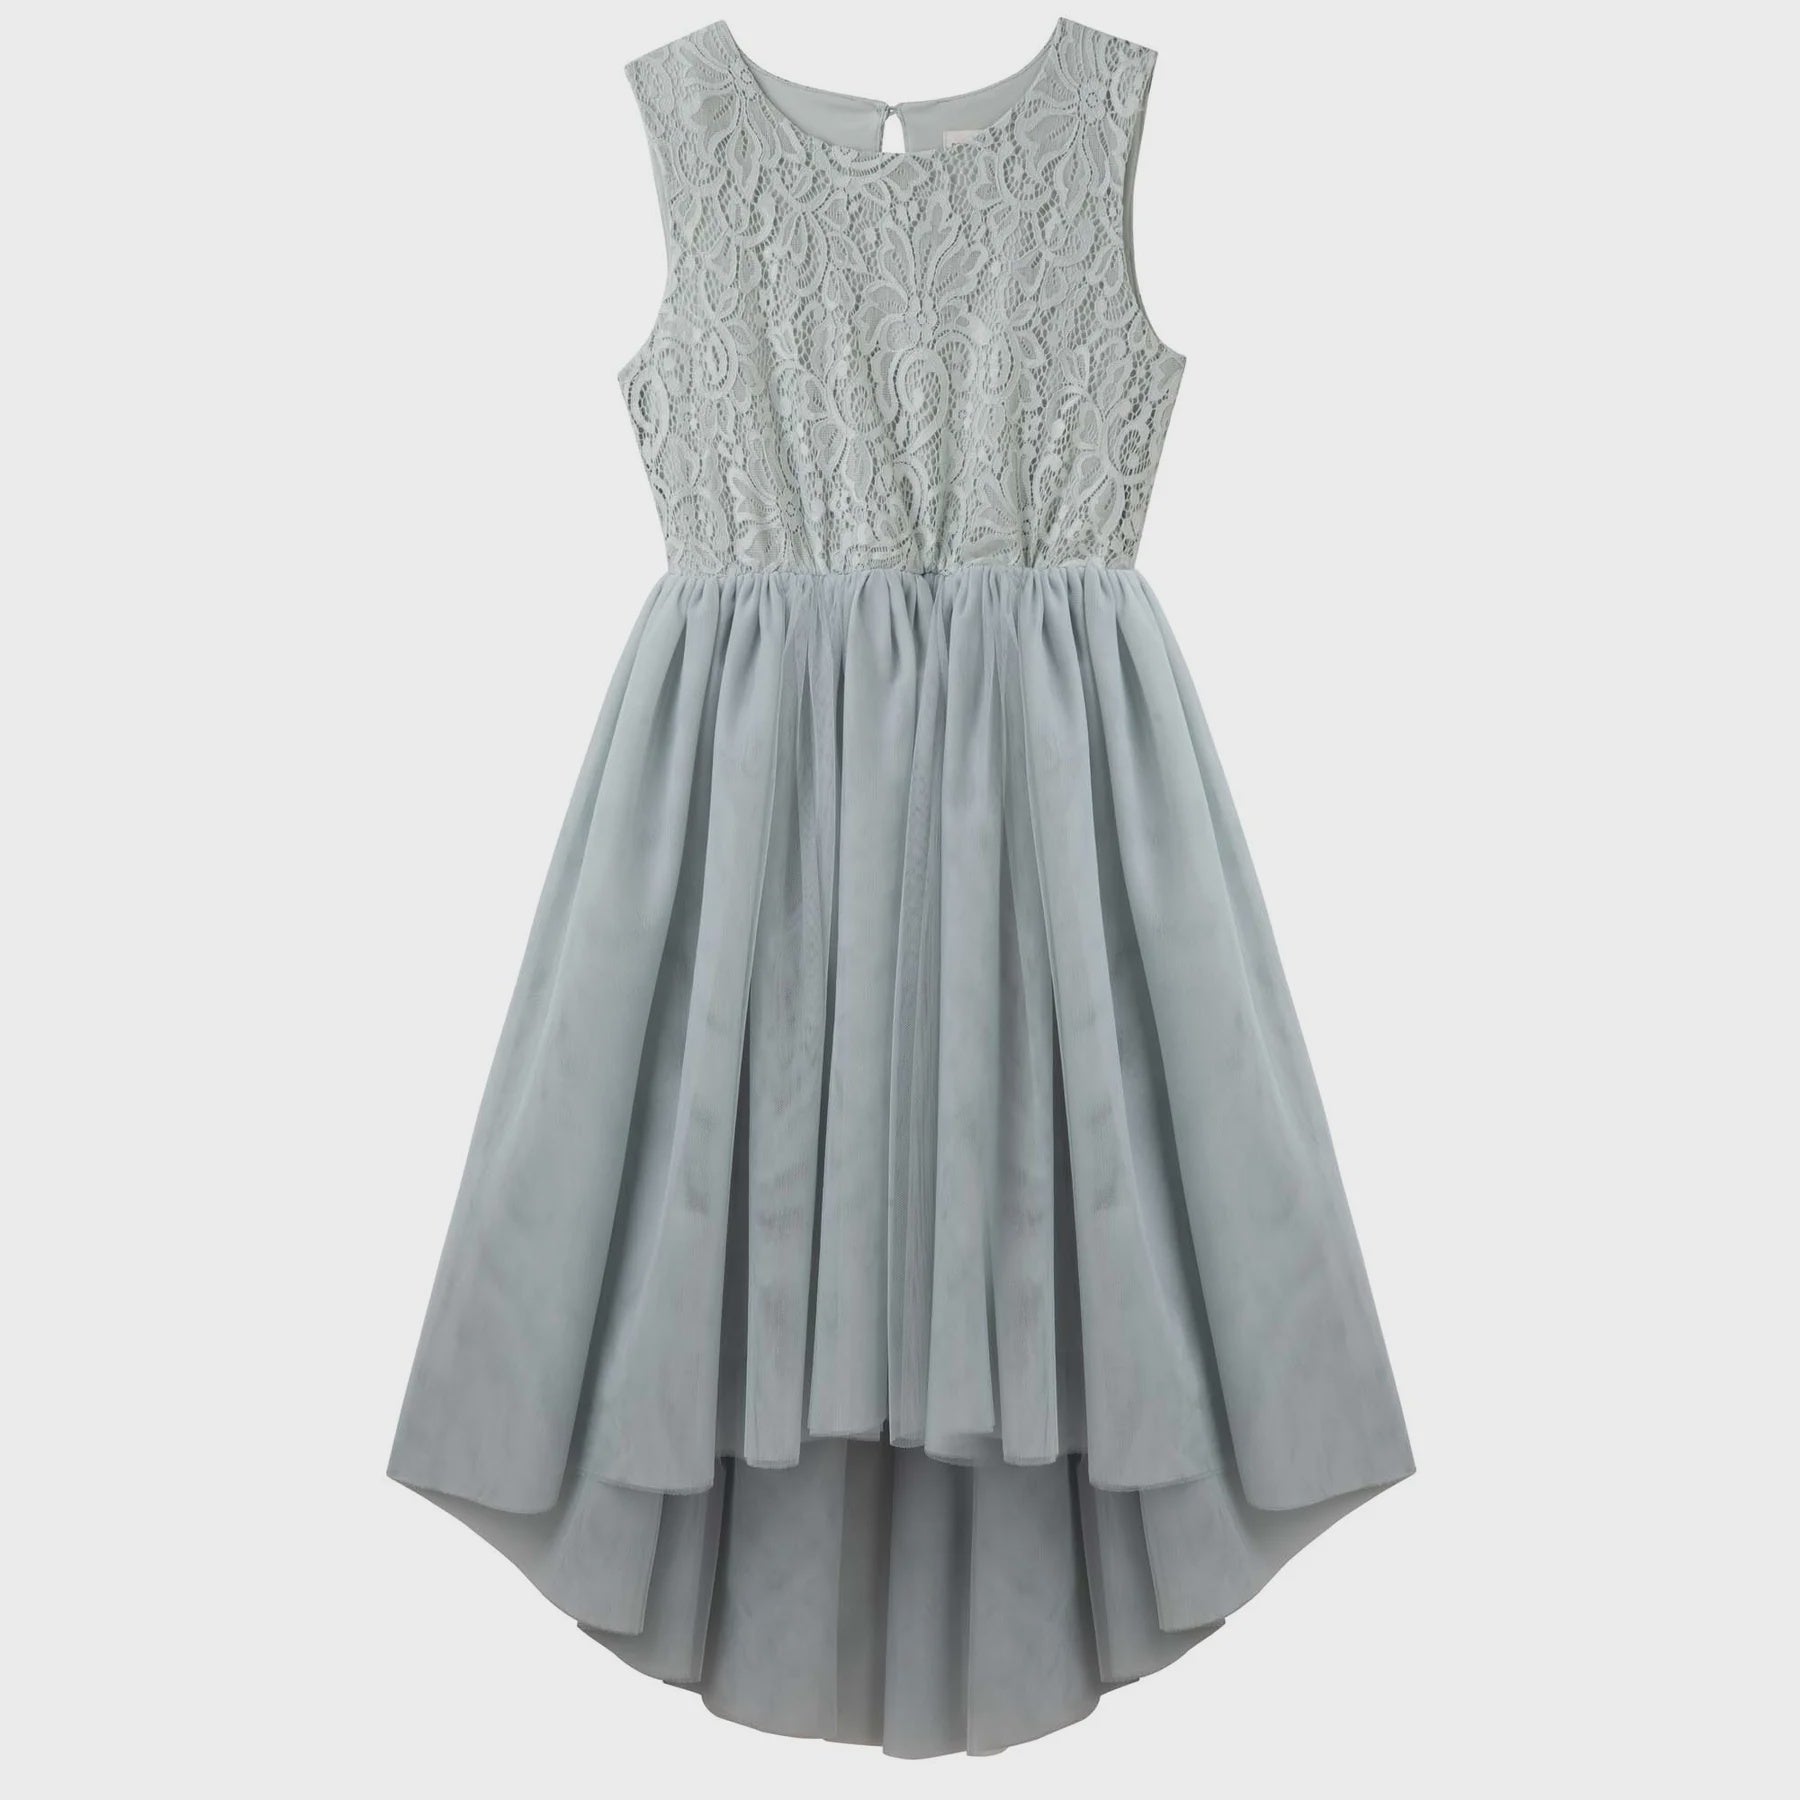 Designer Kidz | Delilah S/S Lace Dress - Sage